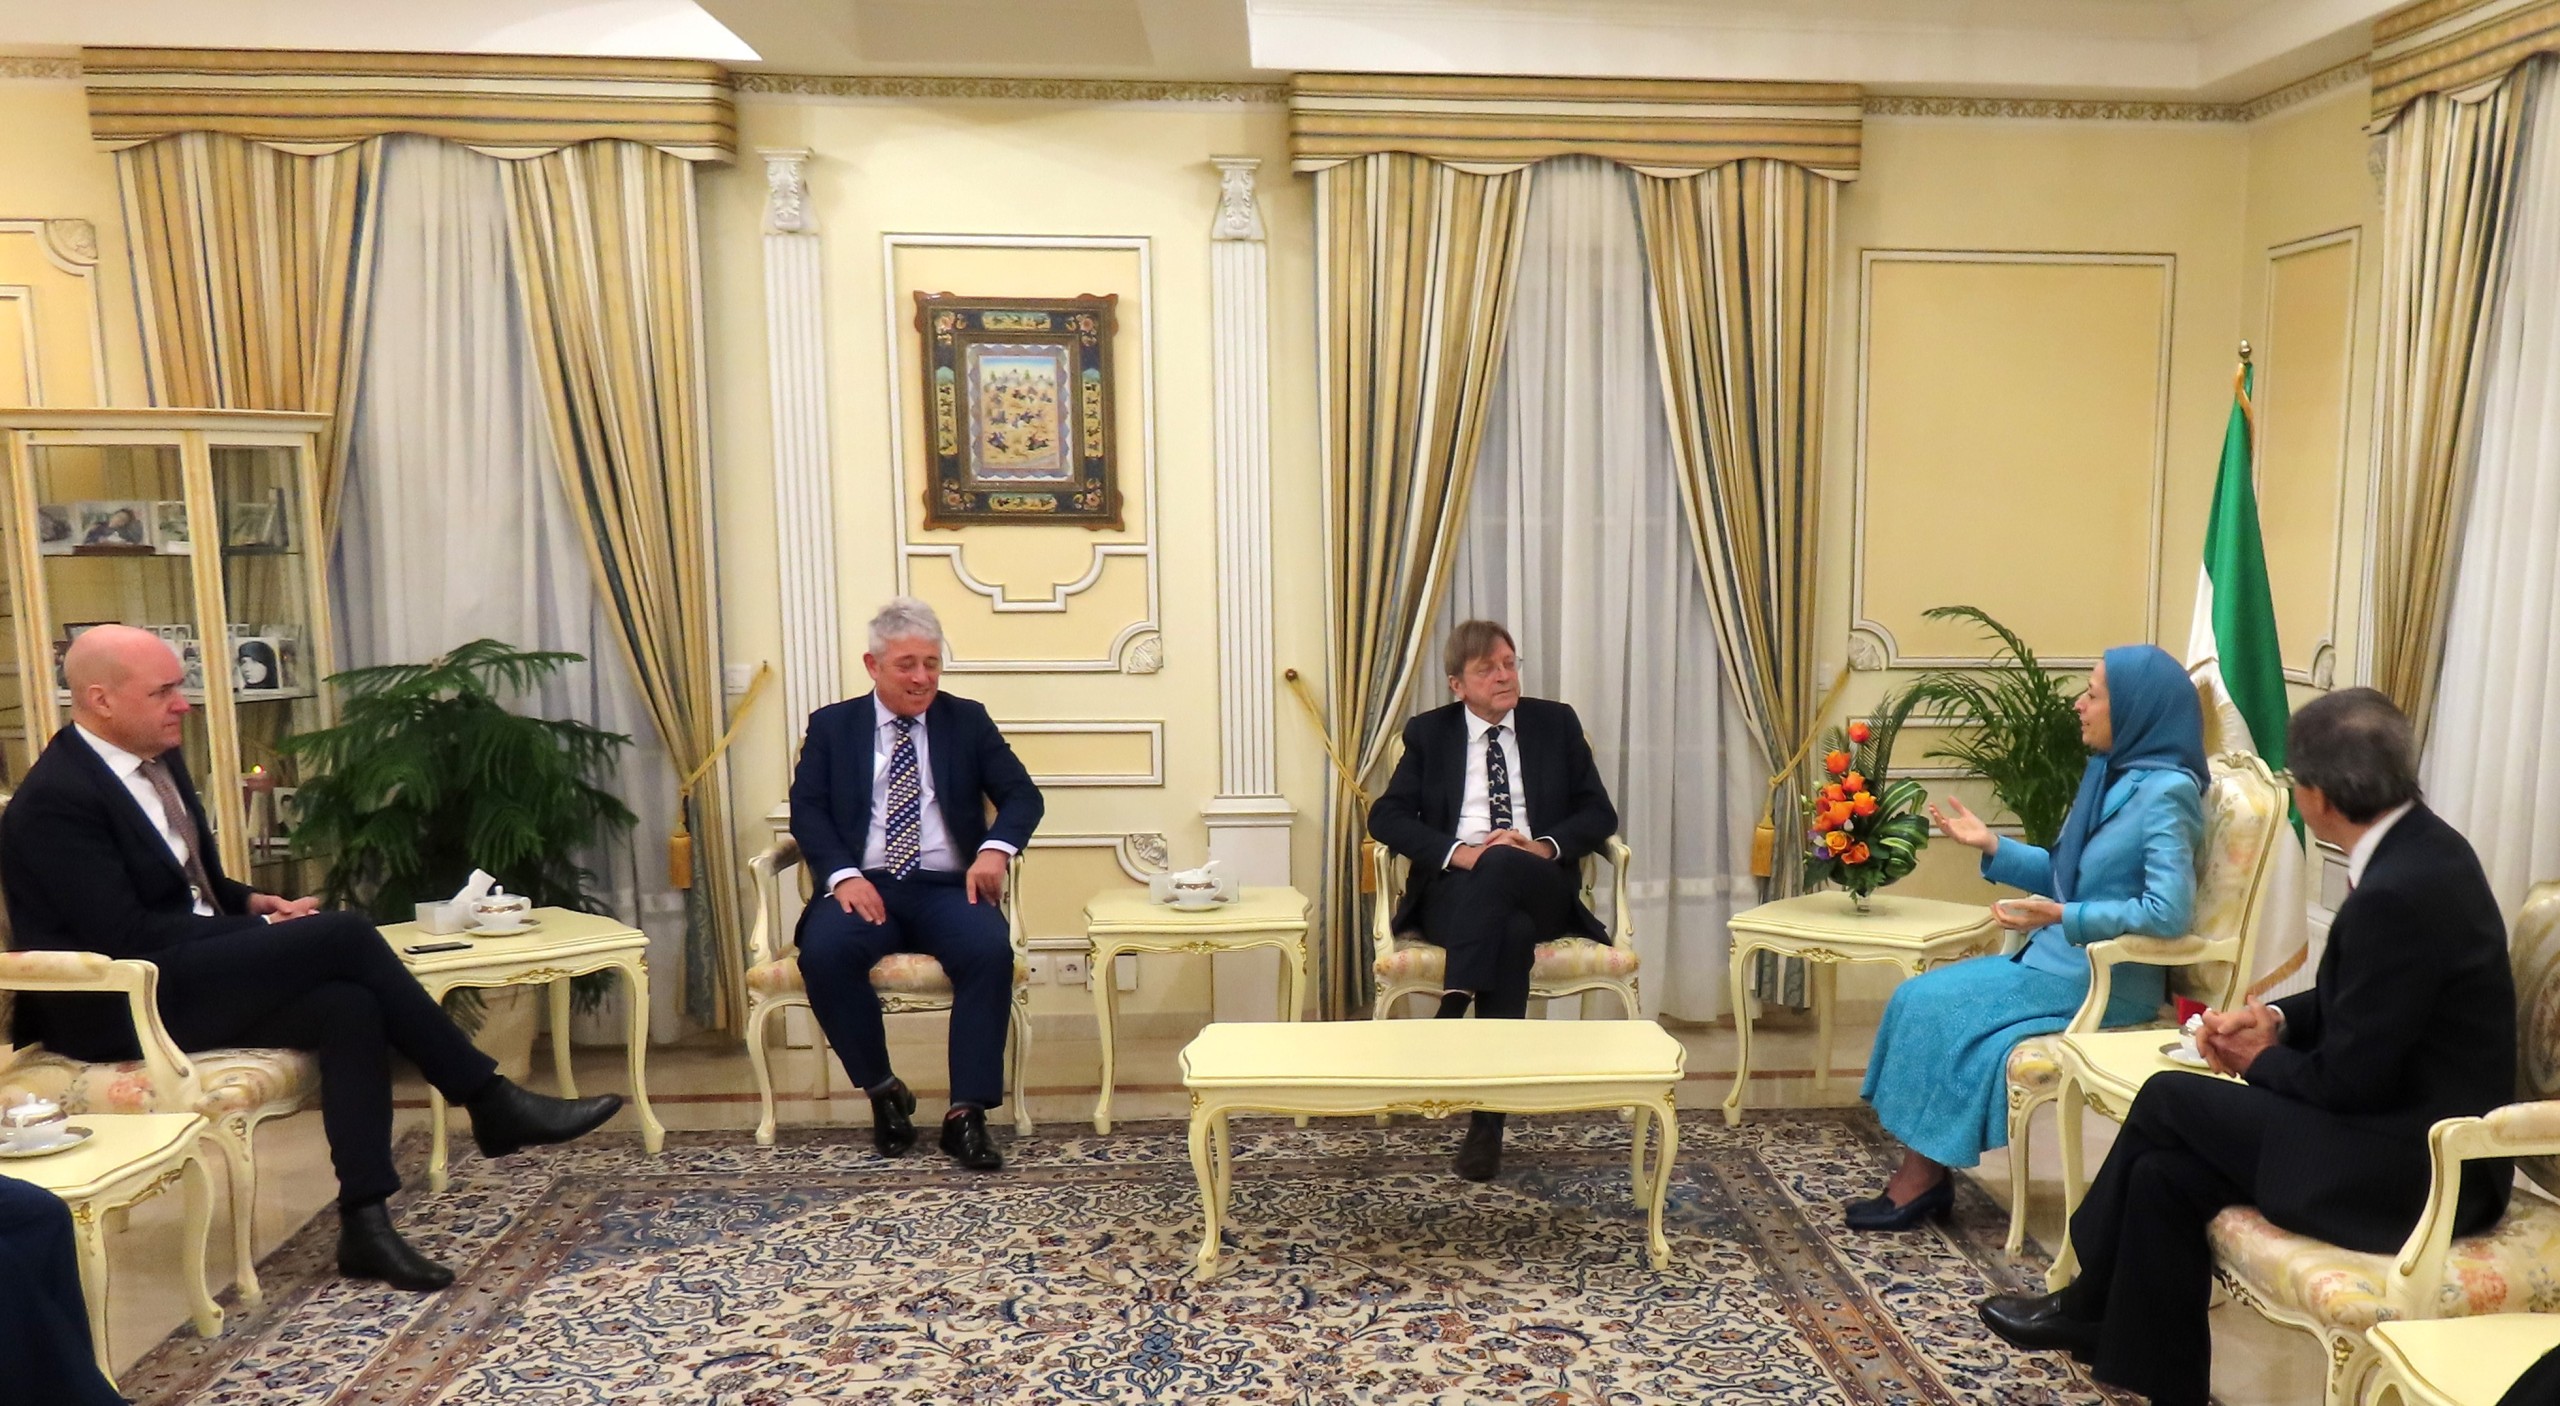 Rencontre des anciens premiers ministres belge et suédois et de l’ancien président de la Chambre des communes britannique avec Maryam Radjavi à Auvers-sur-Oise